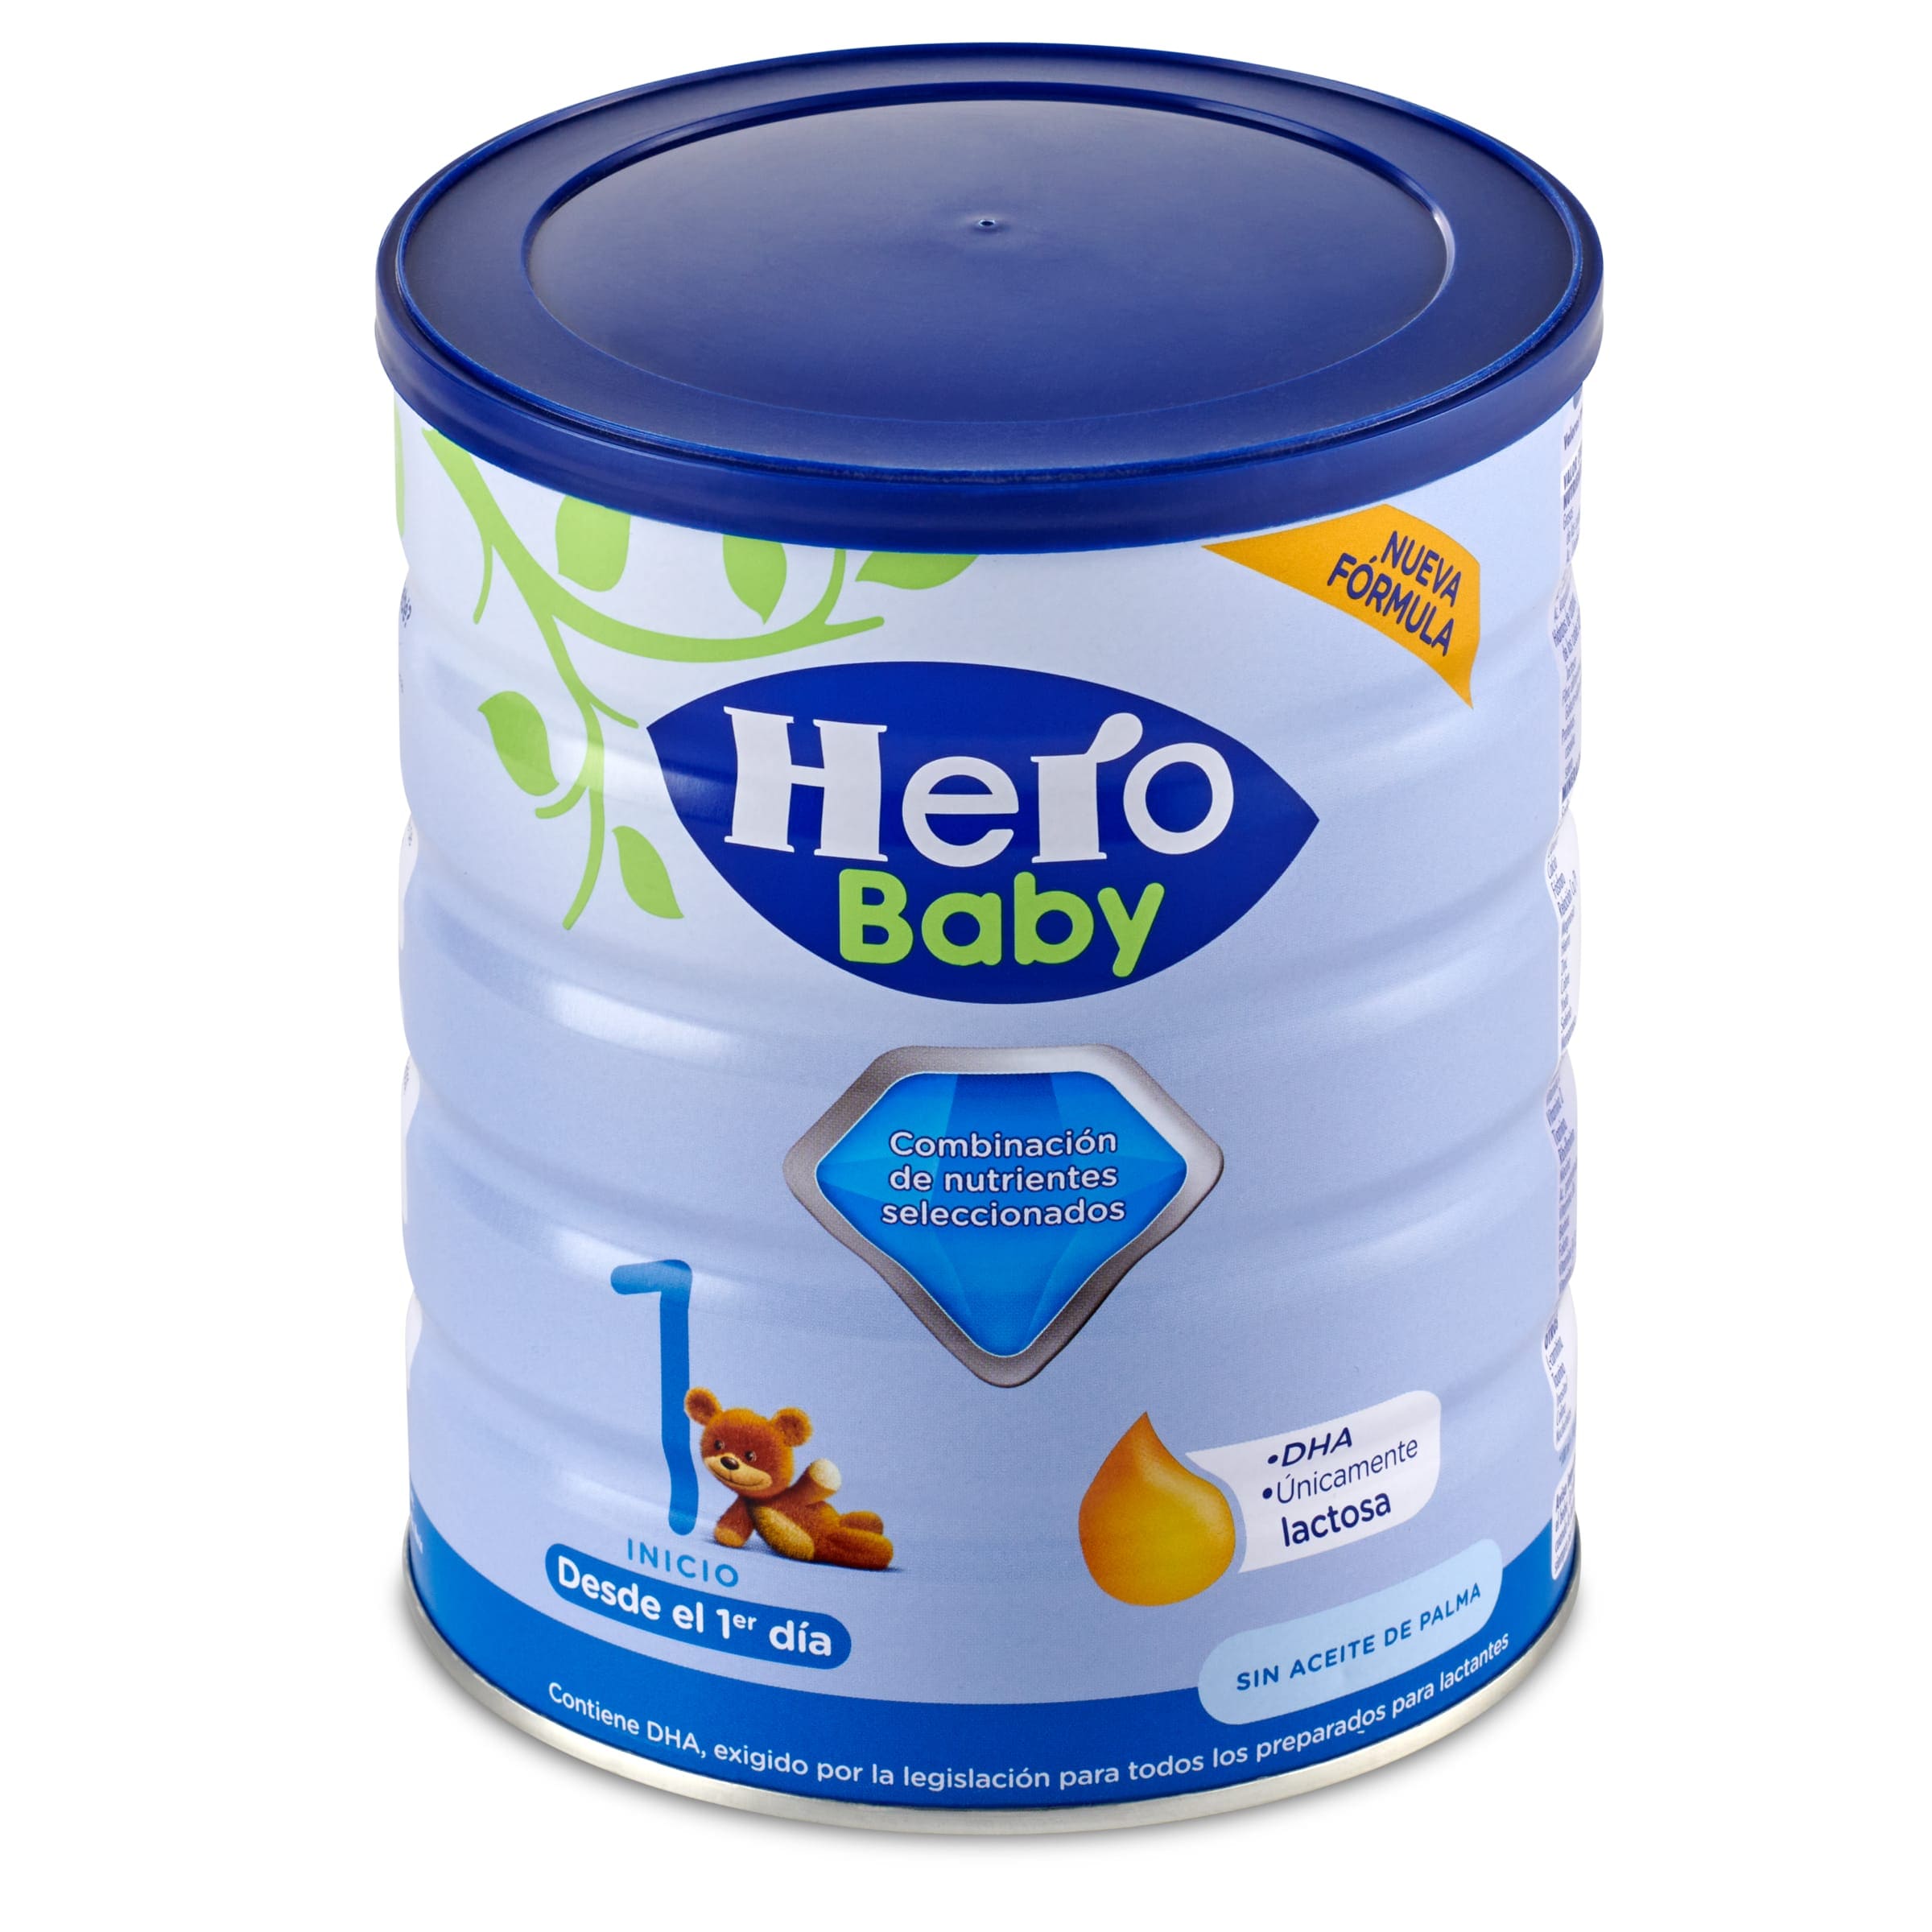 Hero Baby presenta sus nuevas fórmulas infantiles inspiradas en la